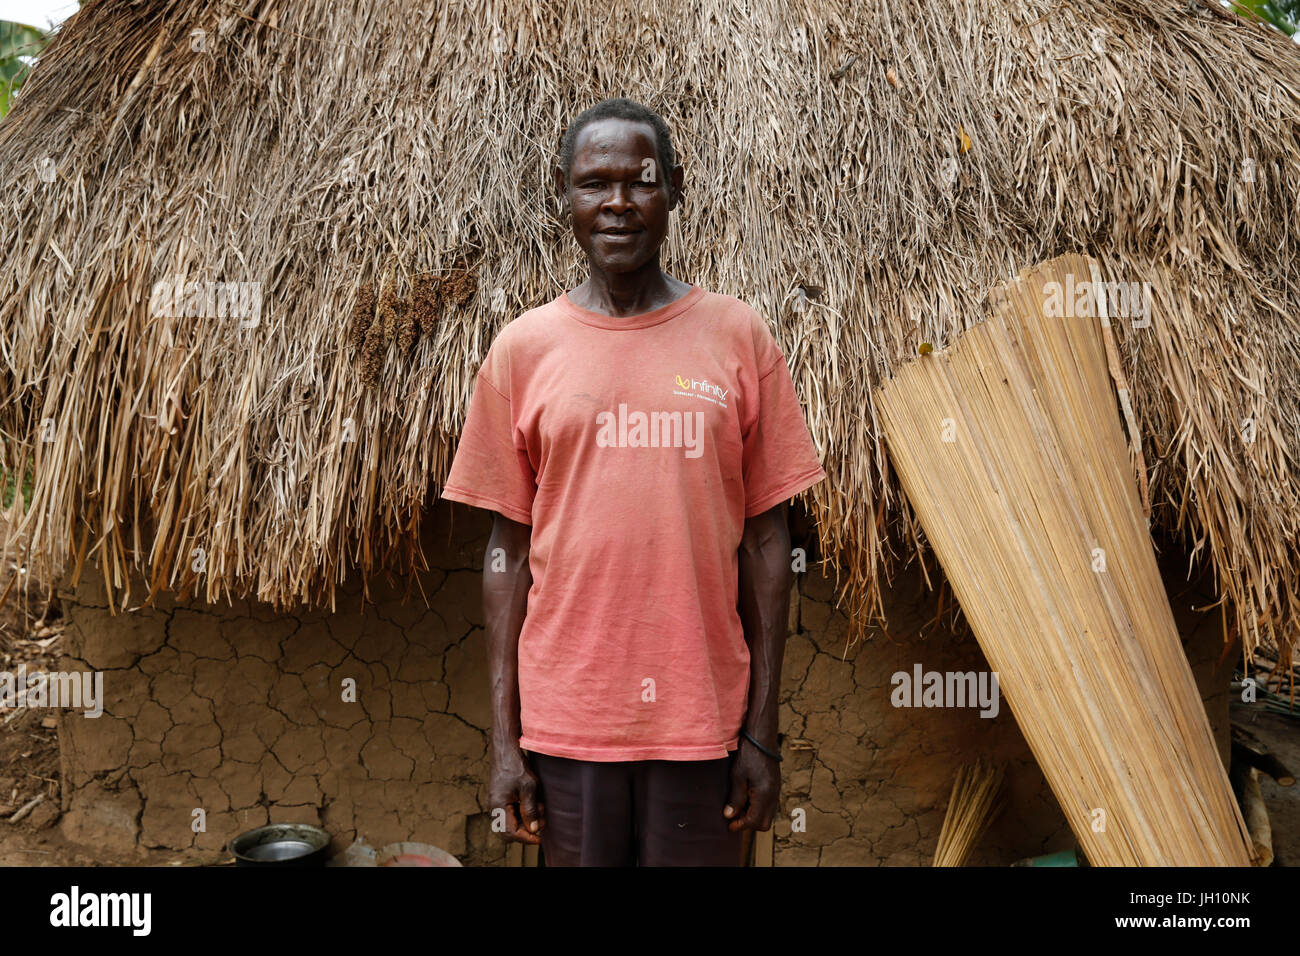 Ugandan villager. Uganda. Stock Photo